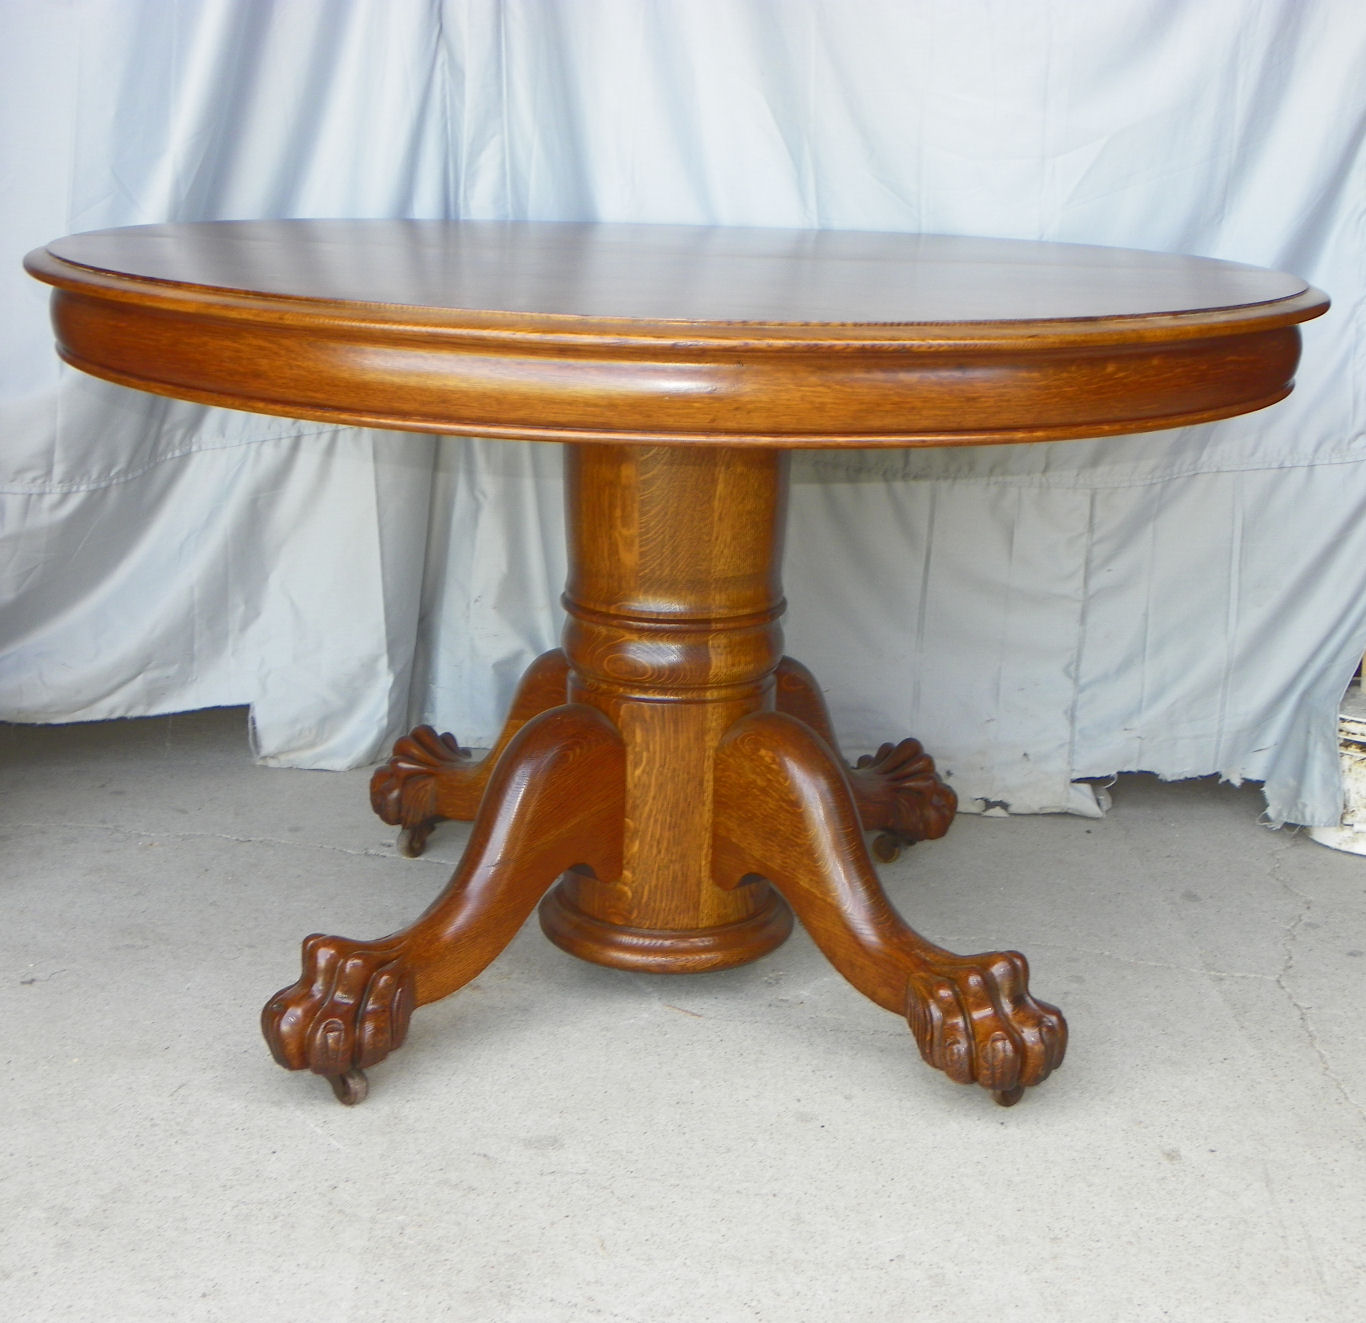  antique furniture round table